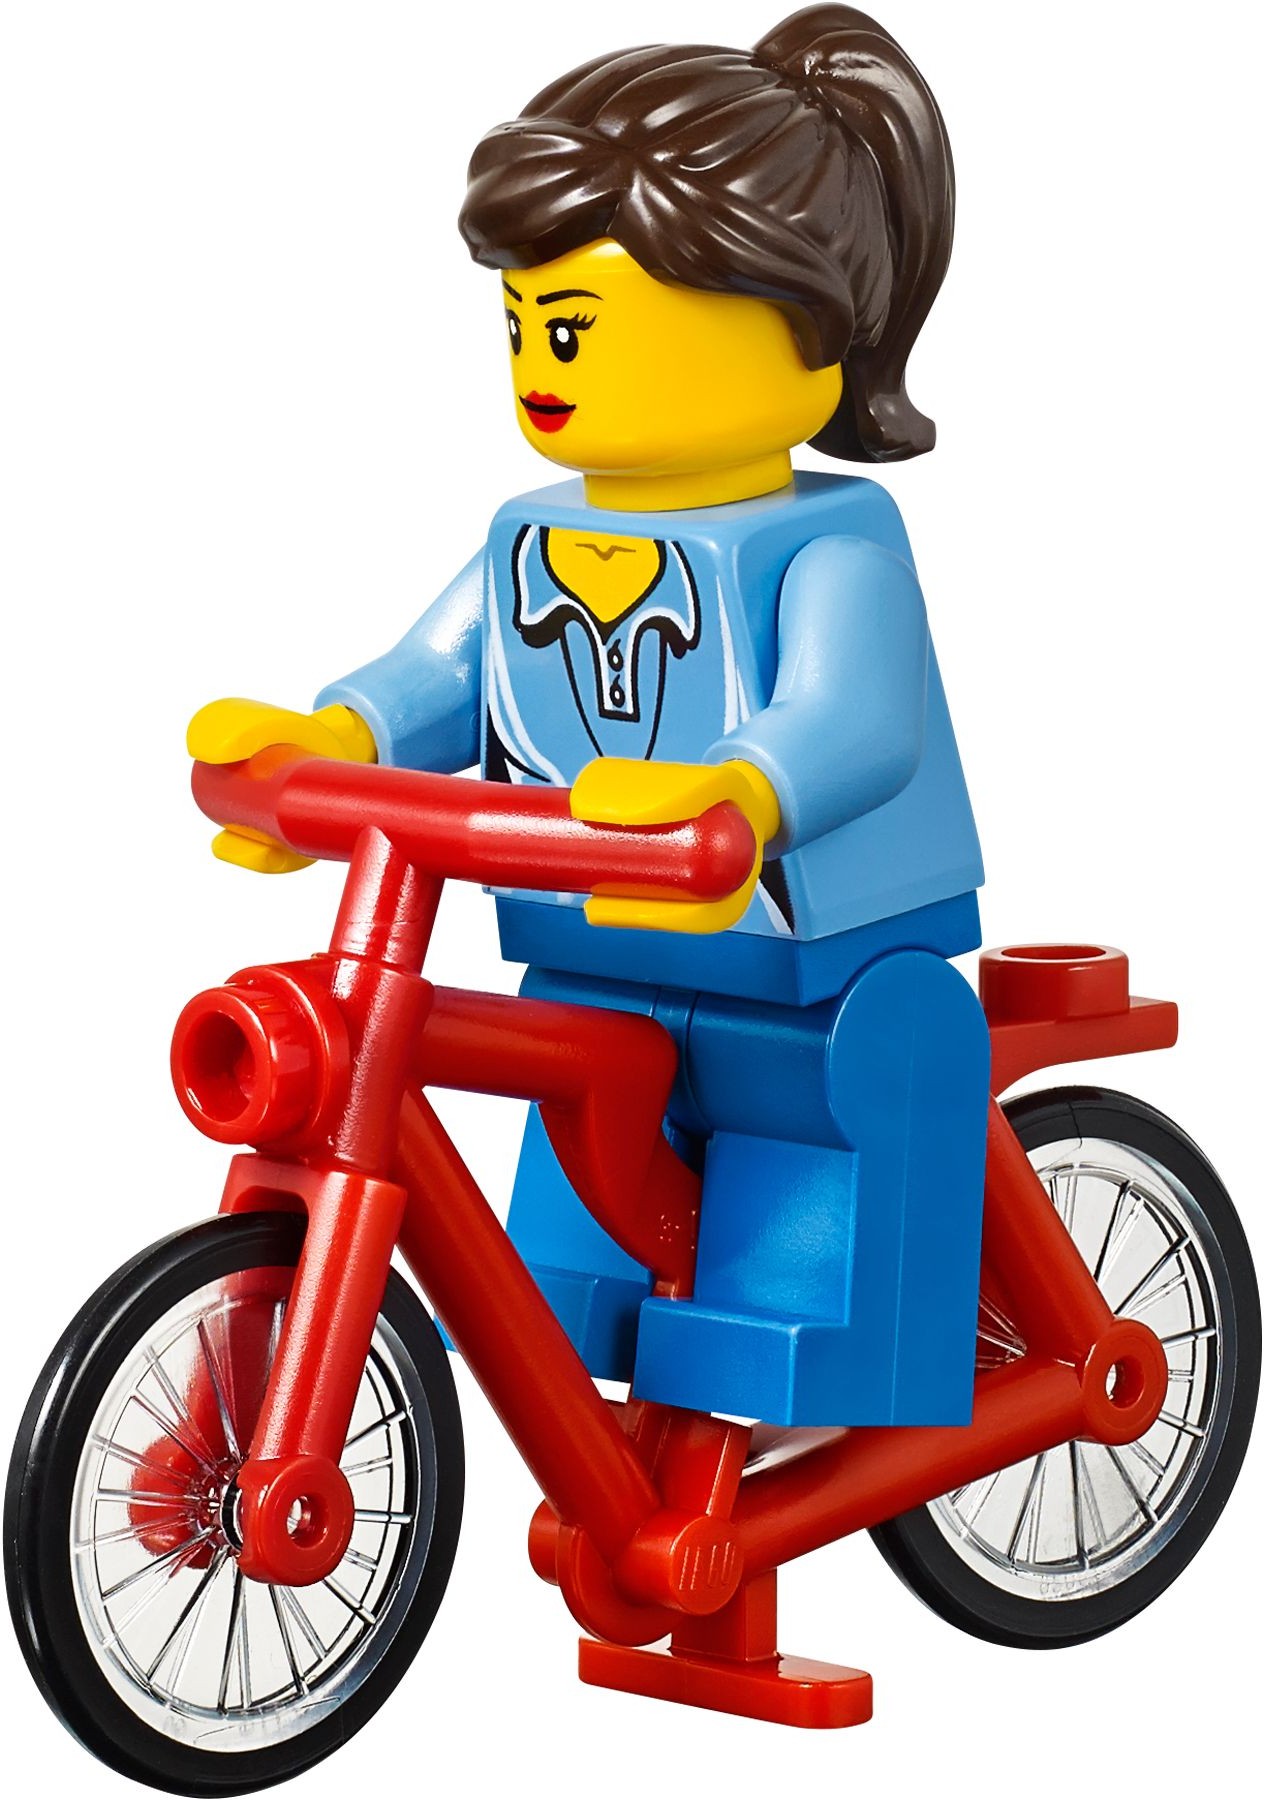 LEGO Creator Cafenea si Magazin de biciclete -14 ani+